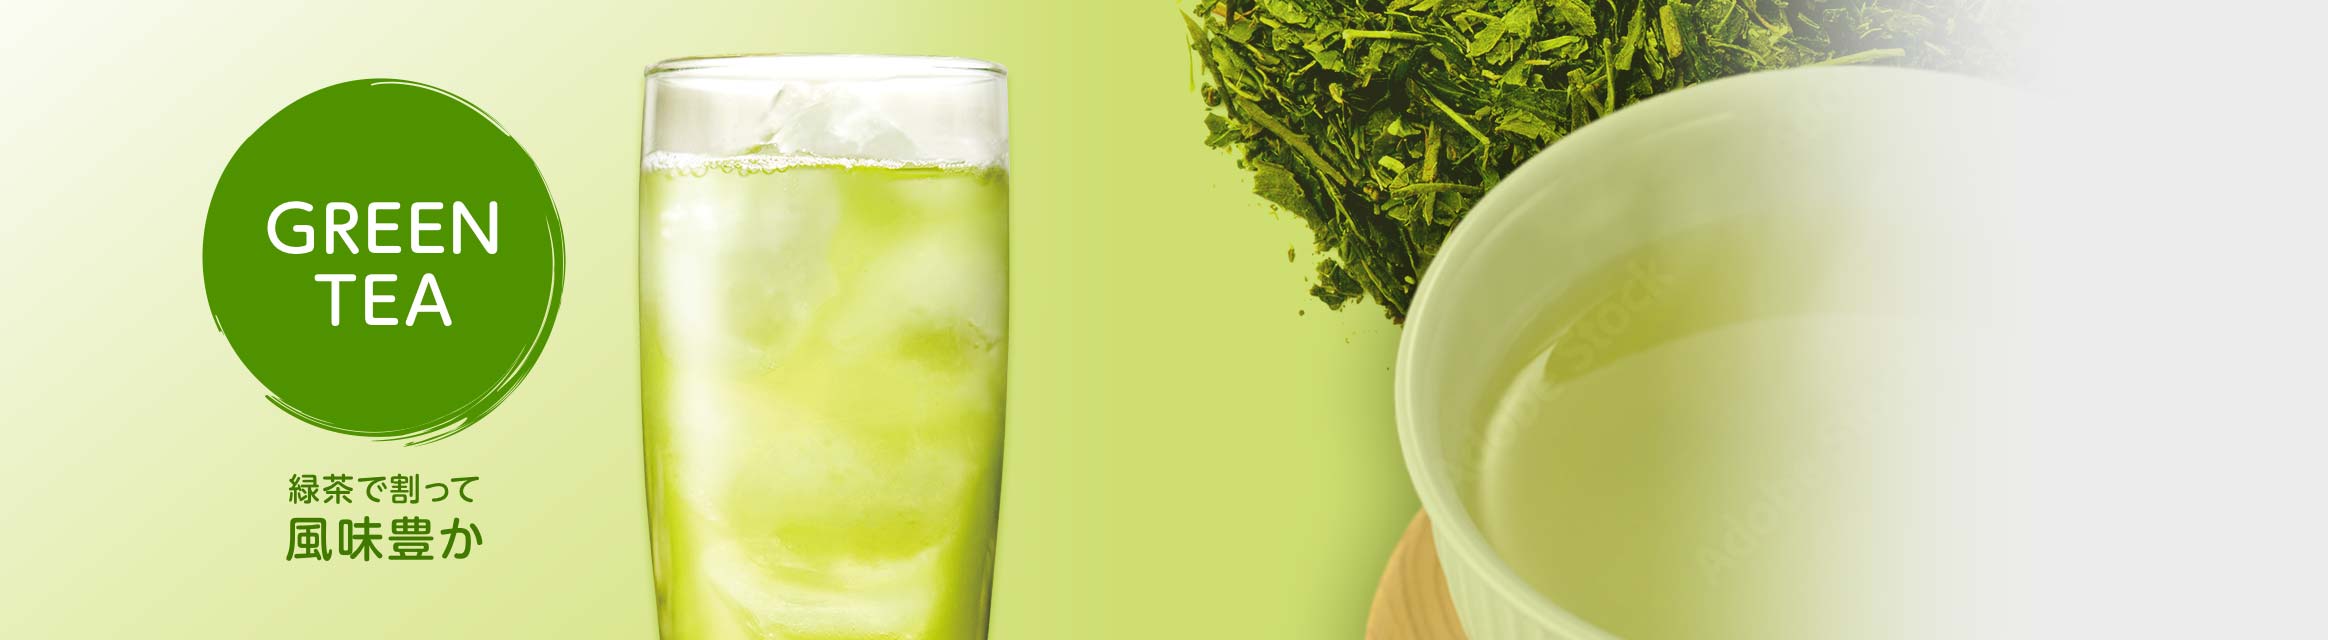 GREEN TEA 緑茶で割って風味豊か